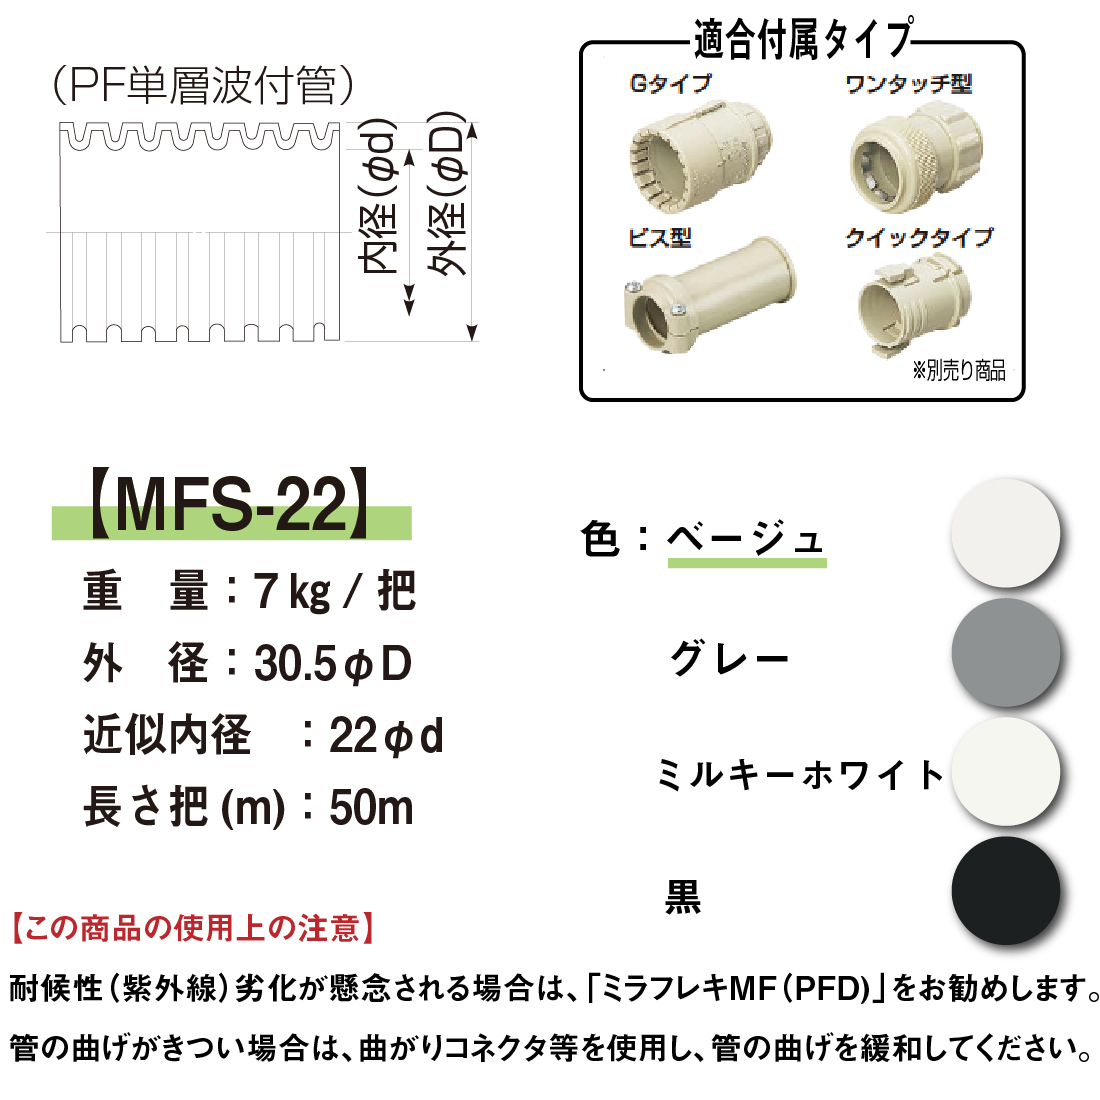 mf-22 ミラフレキ 未使用 - 季節、空調家電